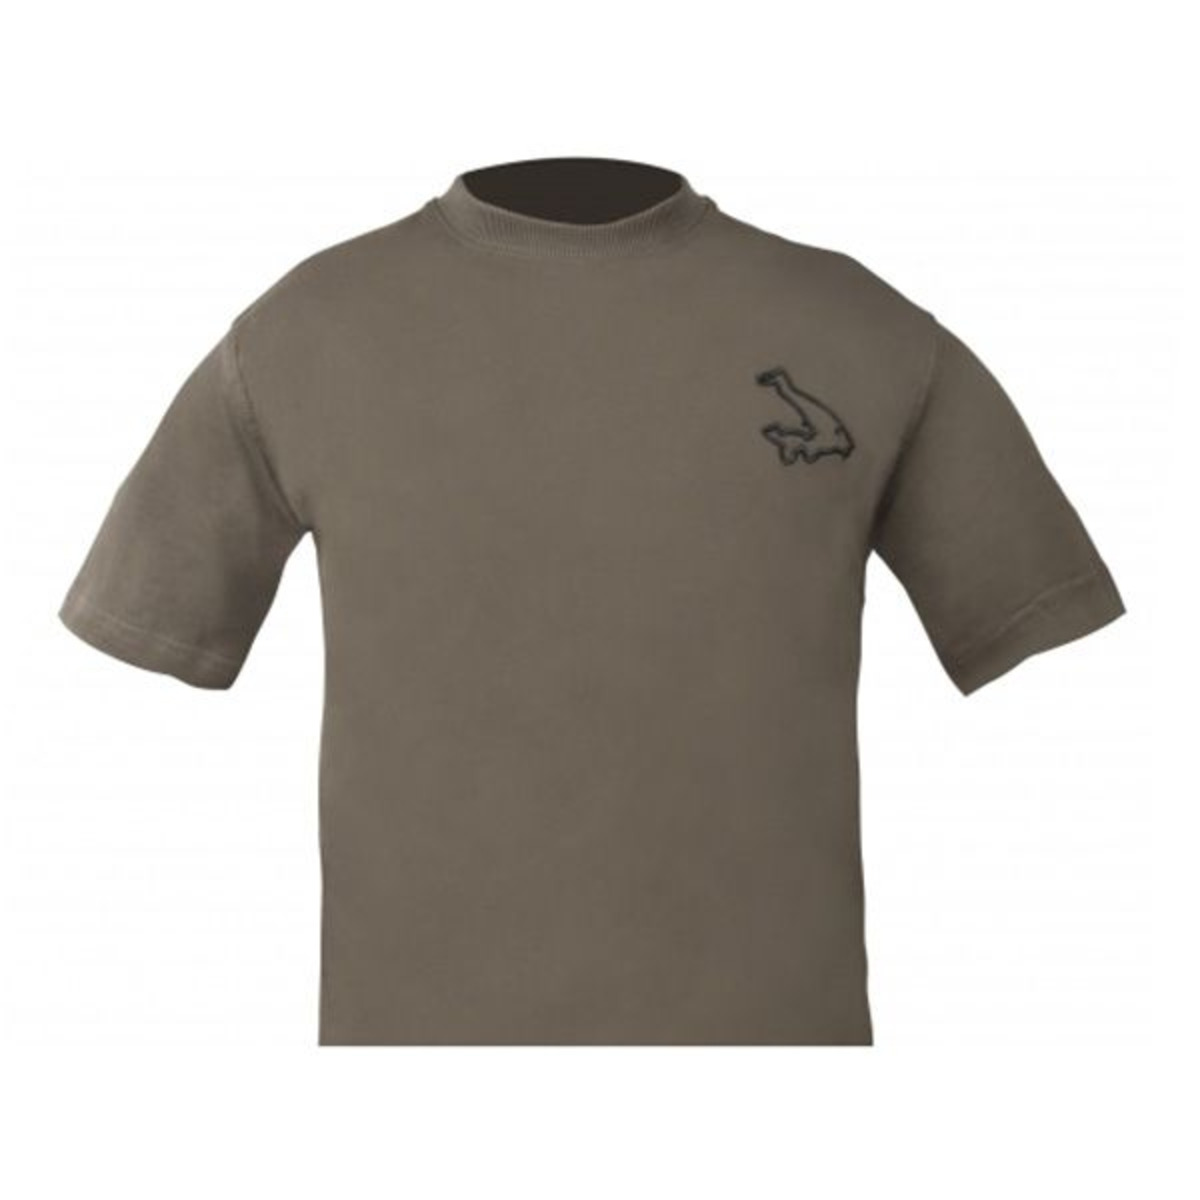 Avid Carp T-Shirt - XL -  Verde Oliva         